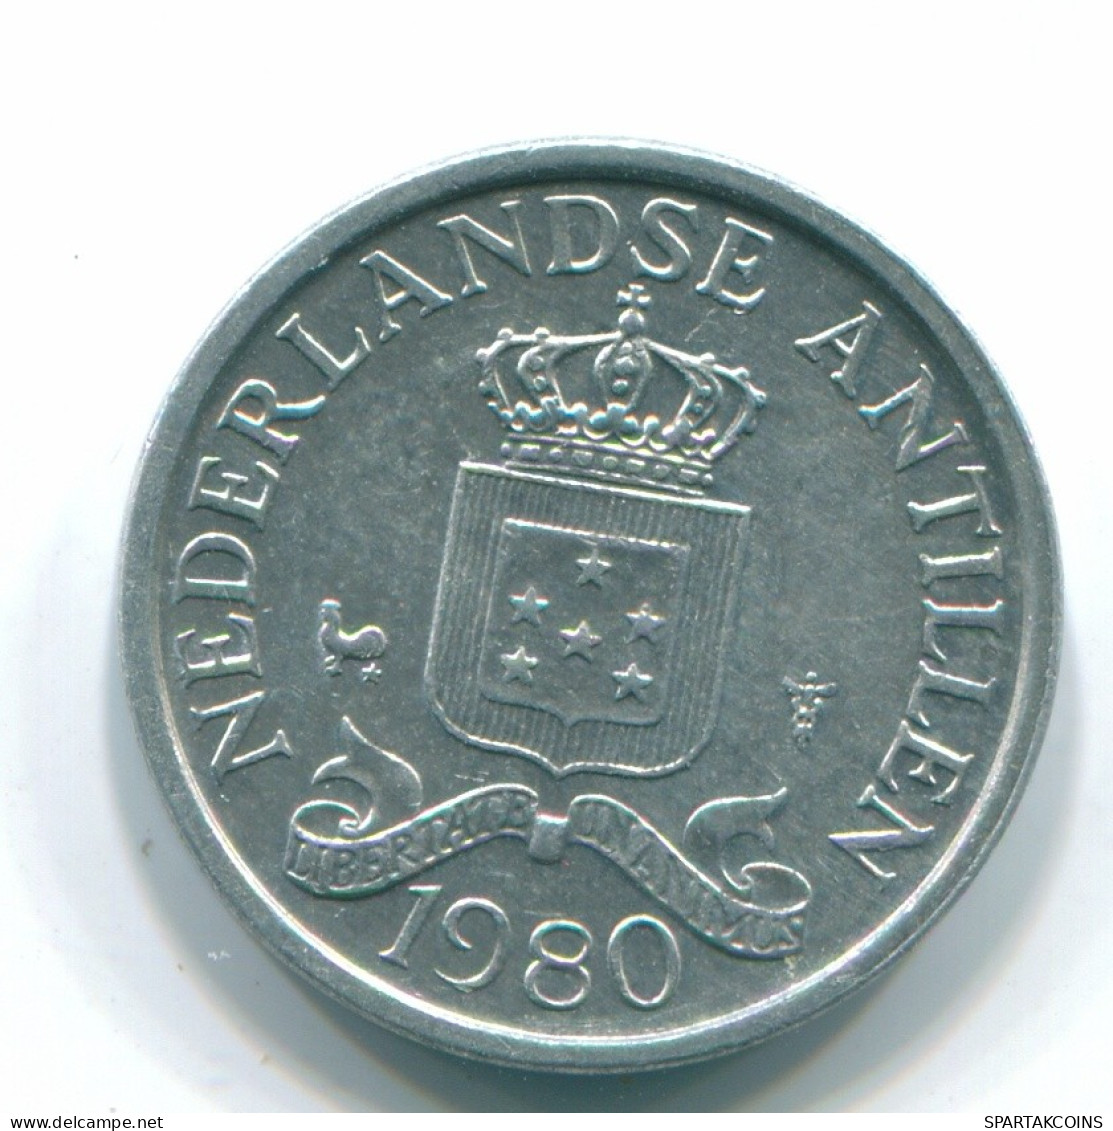 1 CENT 1980 NETHERLANDS ANTILLES Aluminium Colonial Coin #S11198.U.A - Antilles Néerlandaises